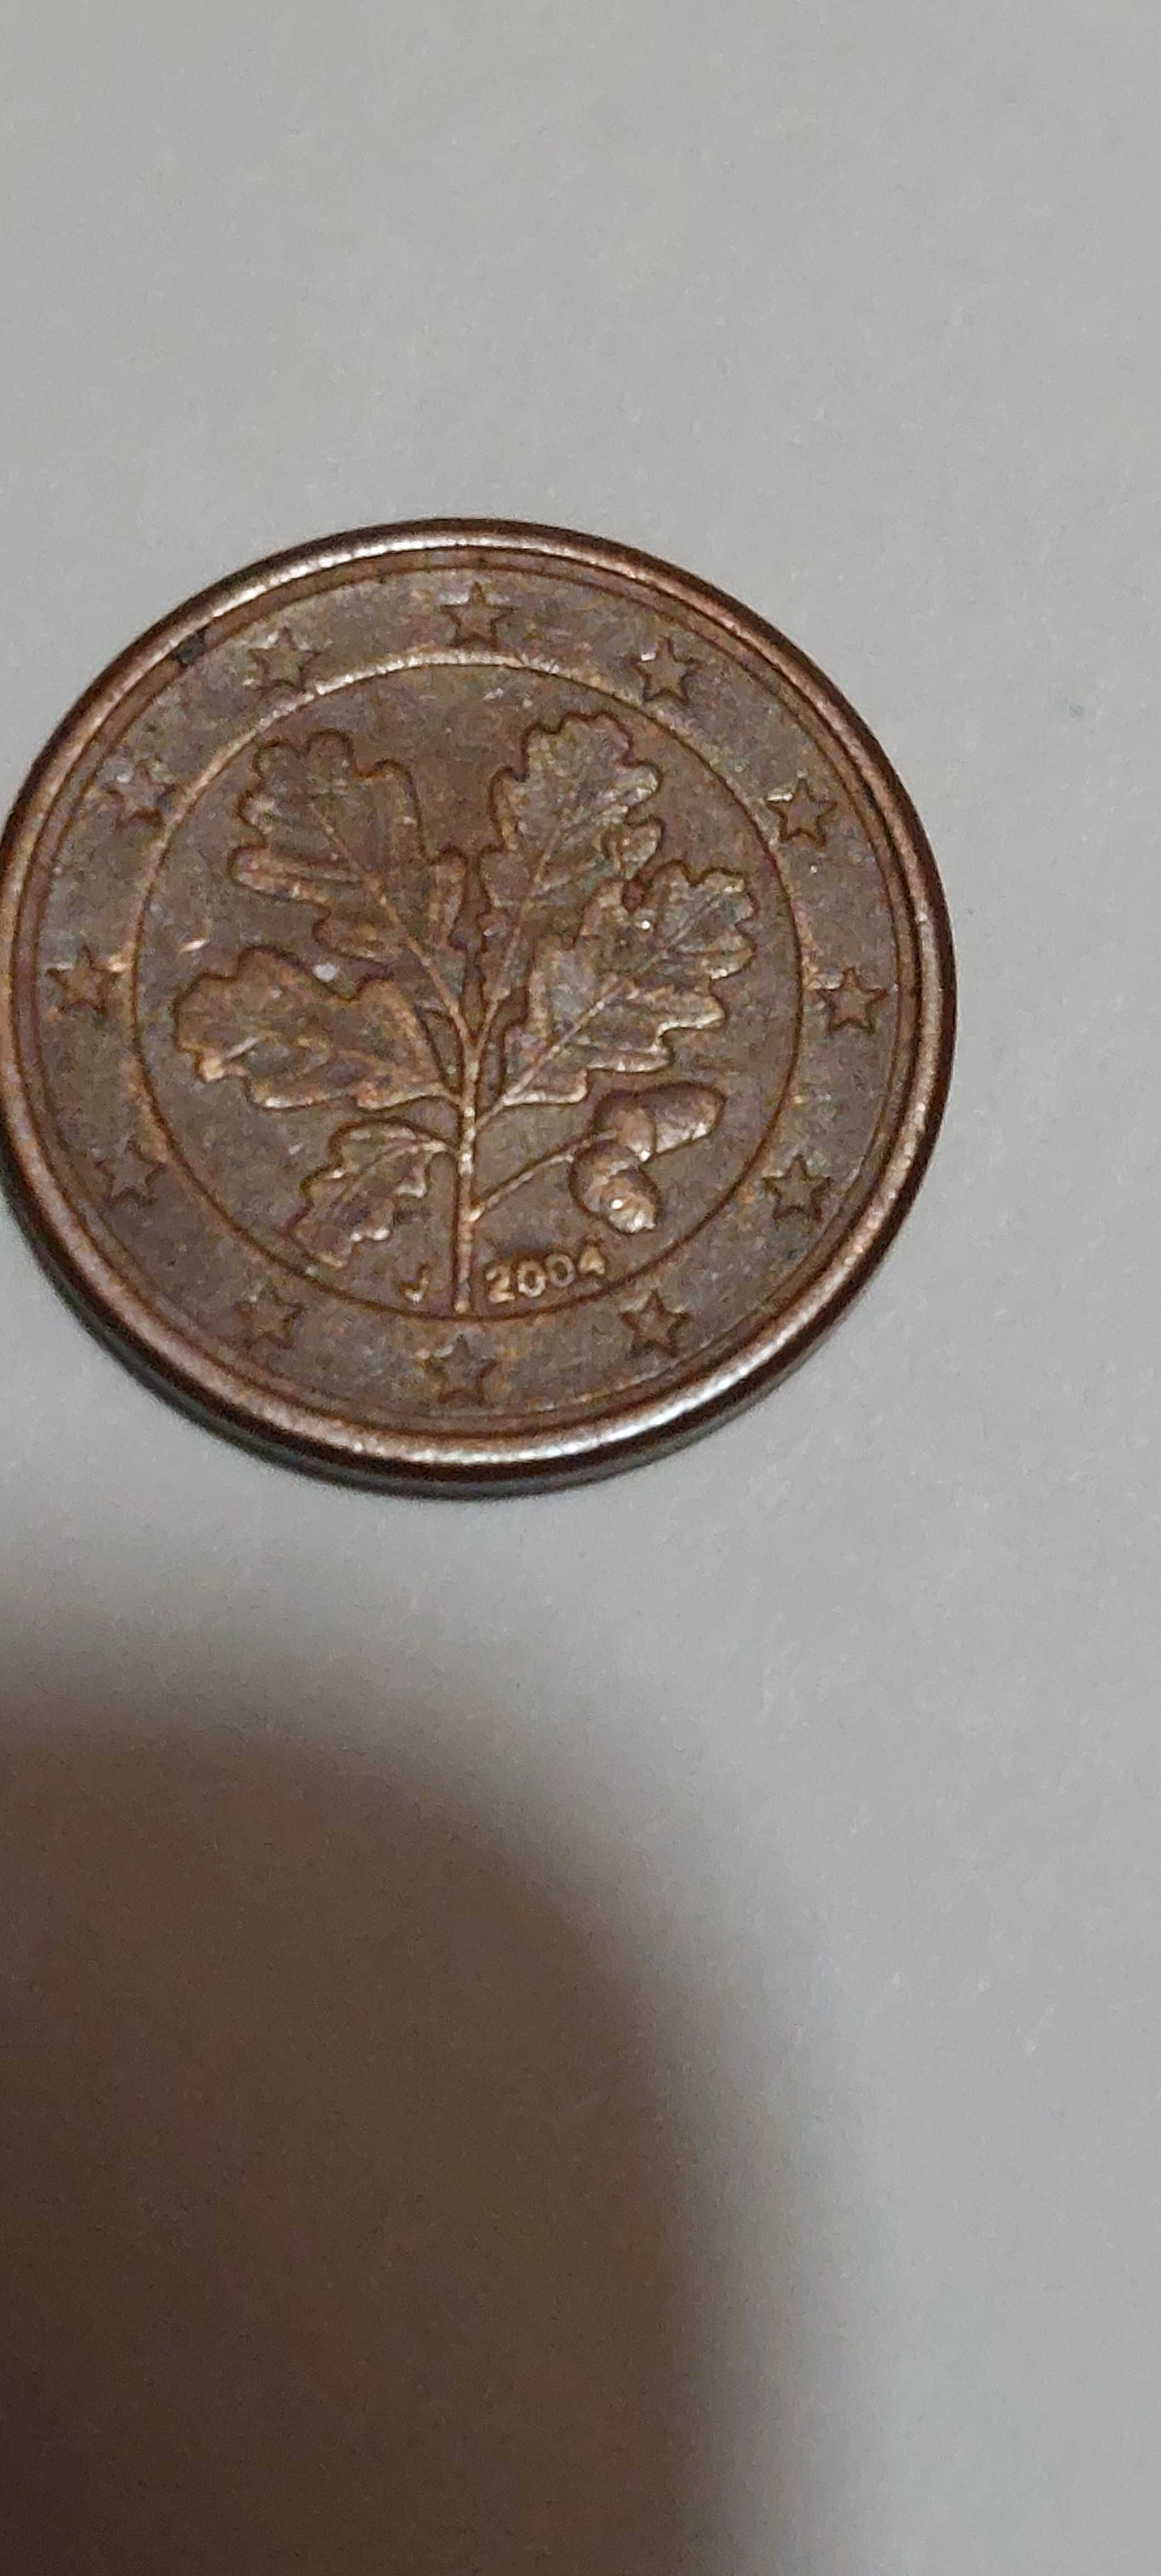 Vendo Moeda rara 0,01 cêntimos Alemanha J 2004